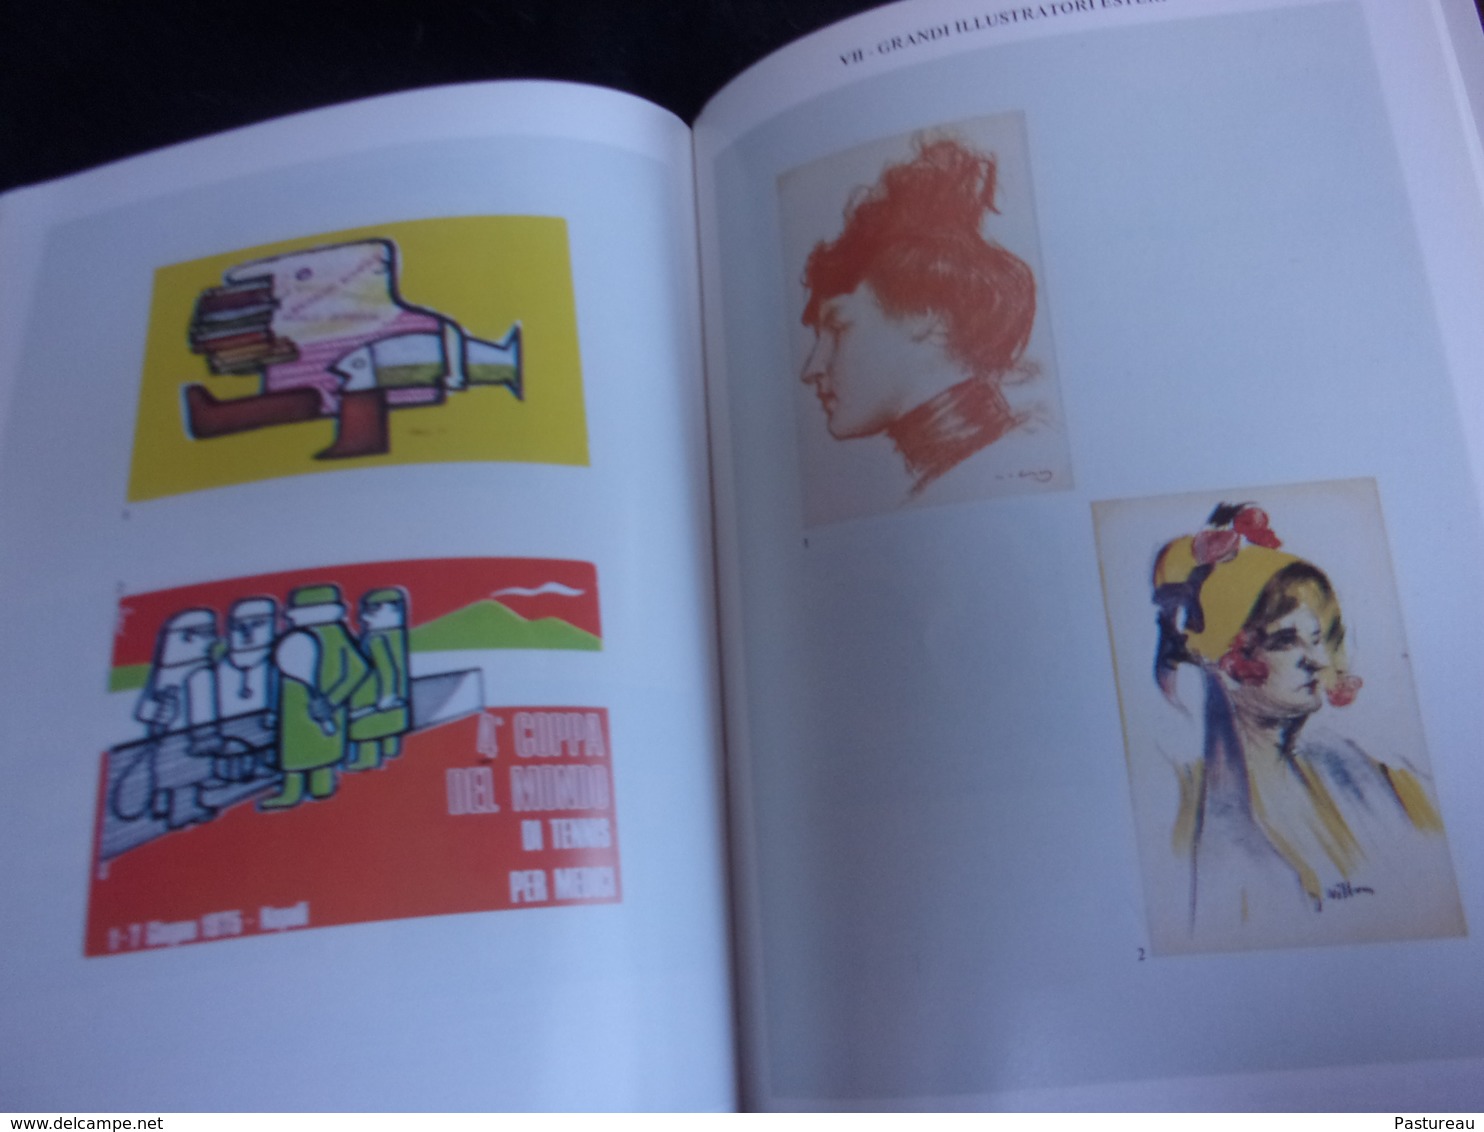 Italie . Cartoline ...Catalogue Mordente 1982. En Français et Italien . 335  pages . Nombreuses Illustrations .7 scans.